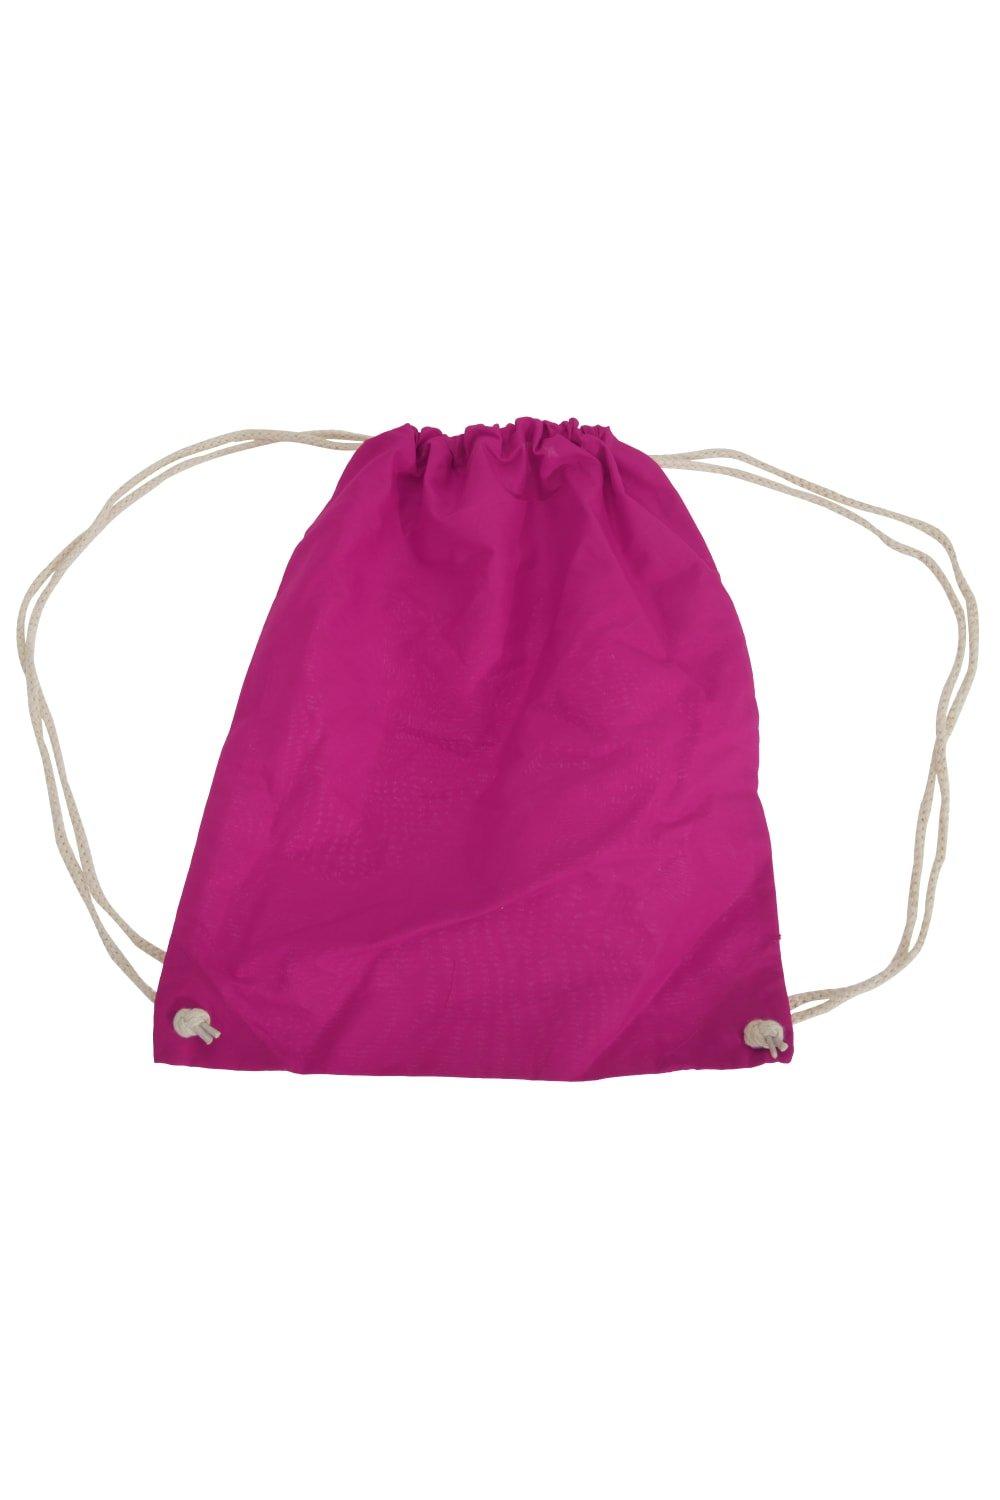 Хлопковая сумка Gymsac - 12 литров (2 шт. в упаковке) Westford Mill, розовый